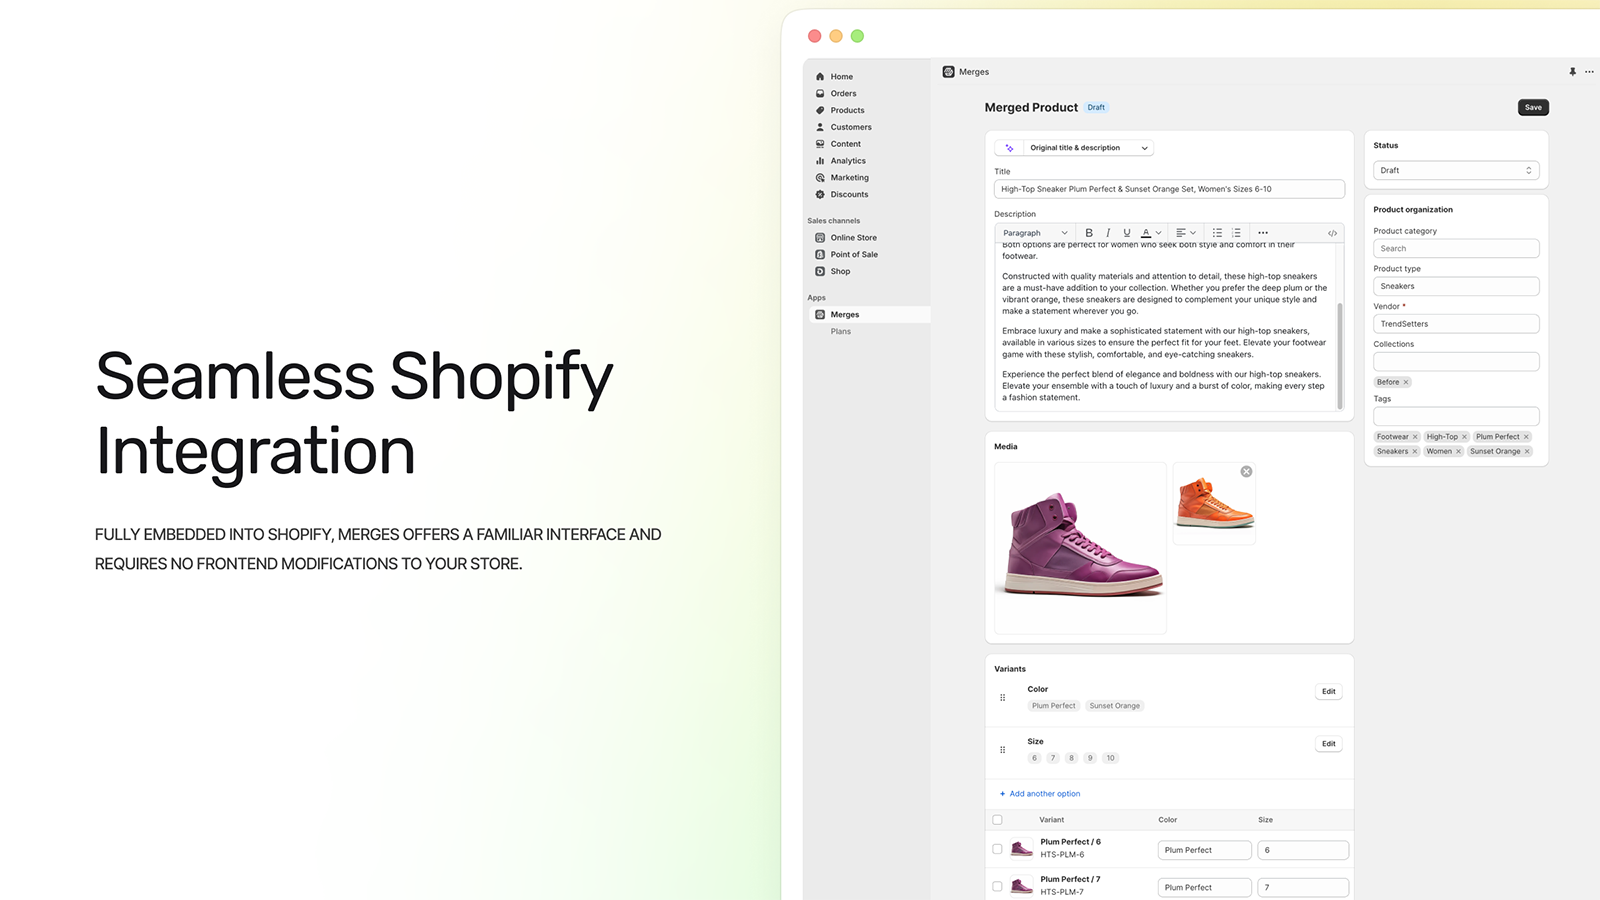 App vollständig in das Shopify-Erlebnis eingebettet